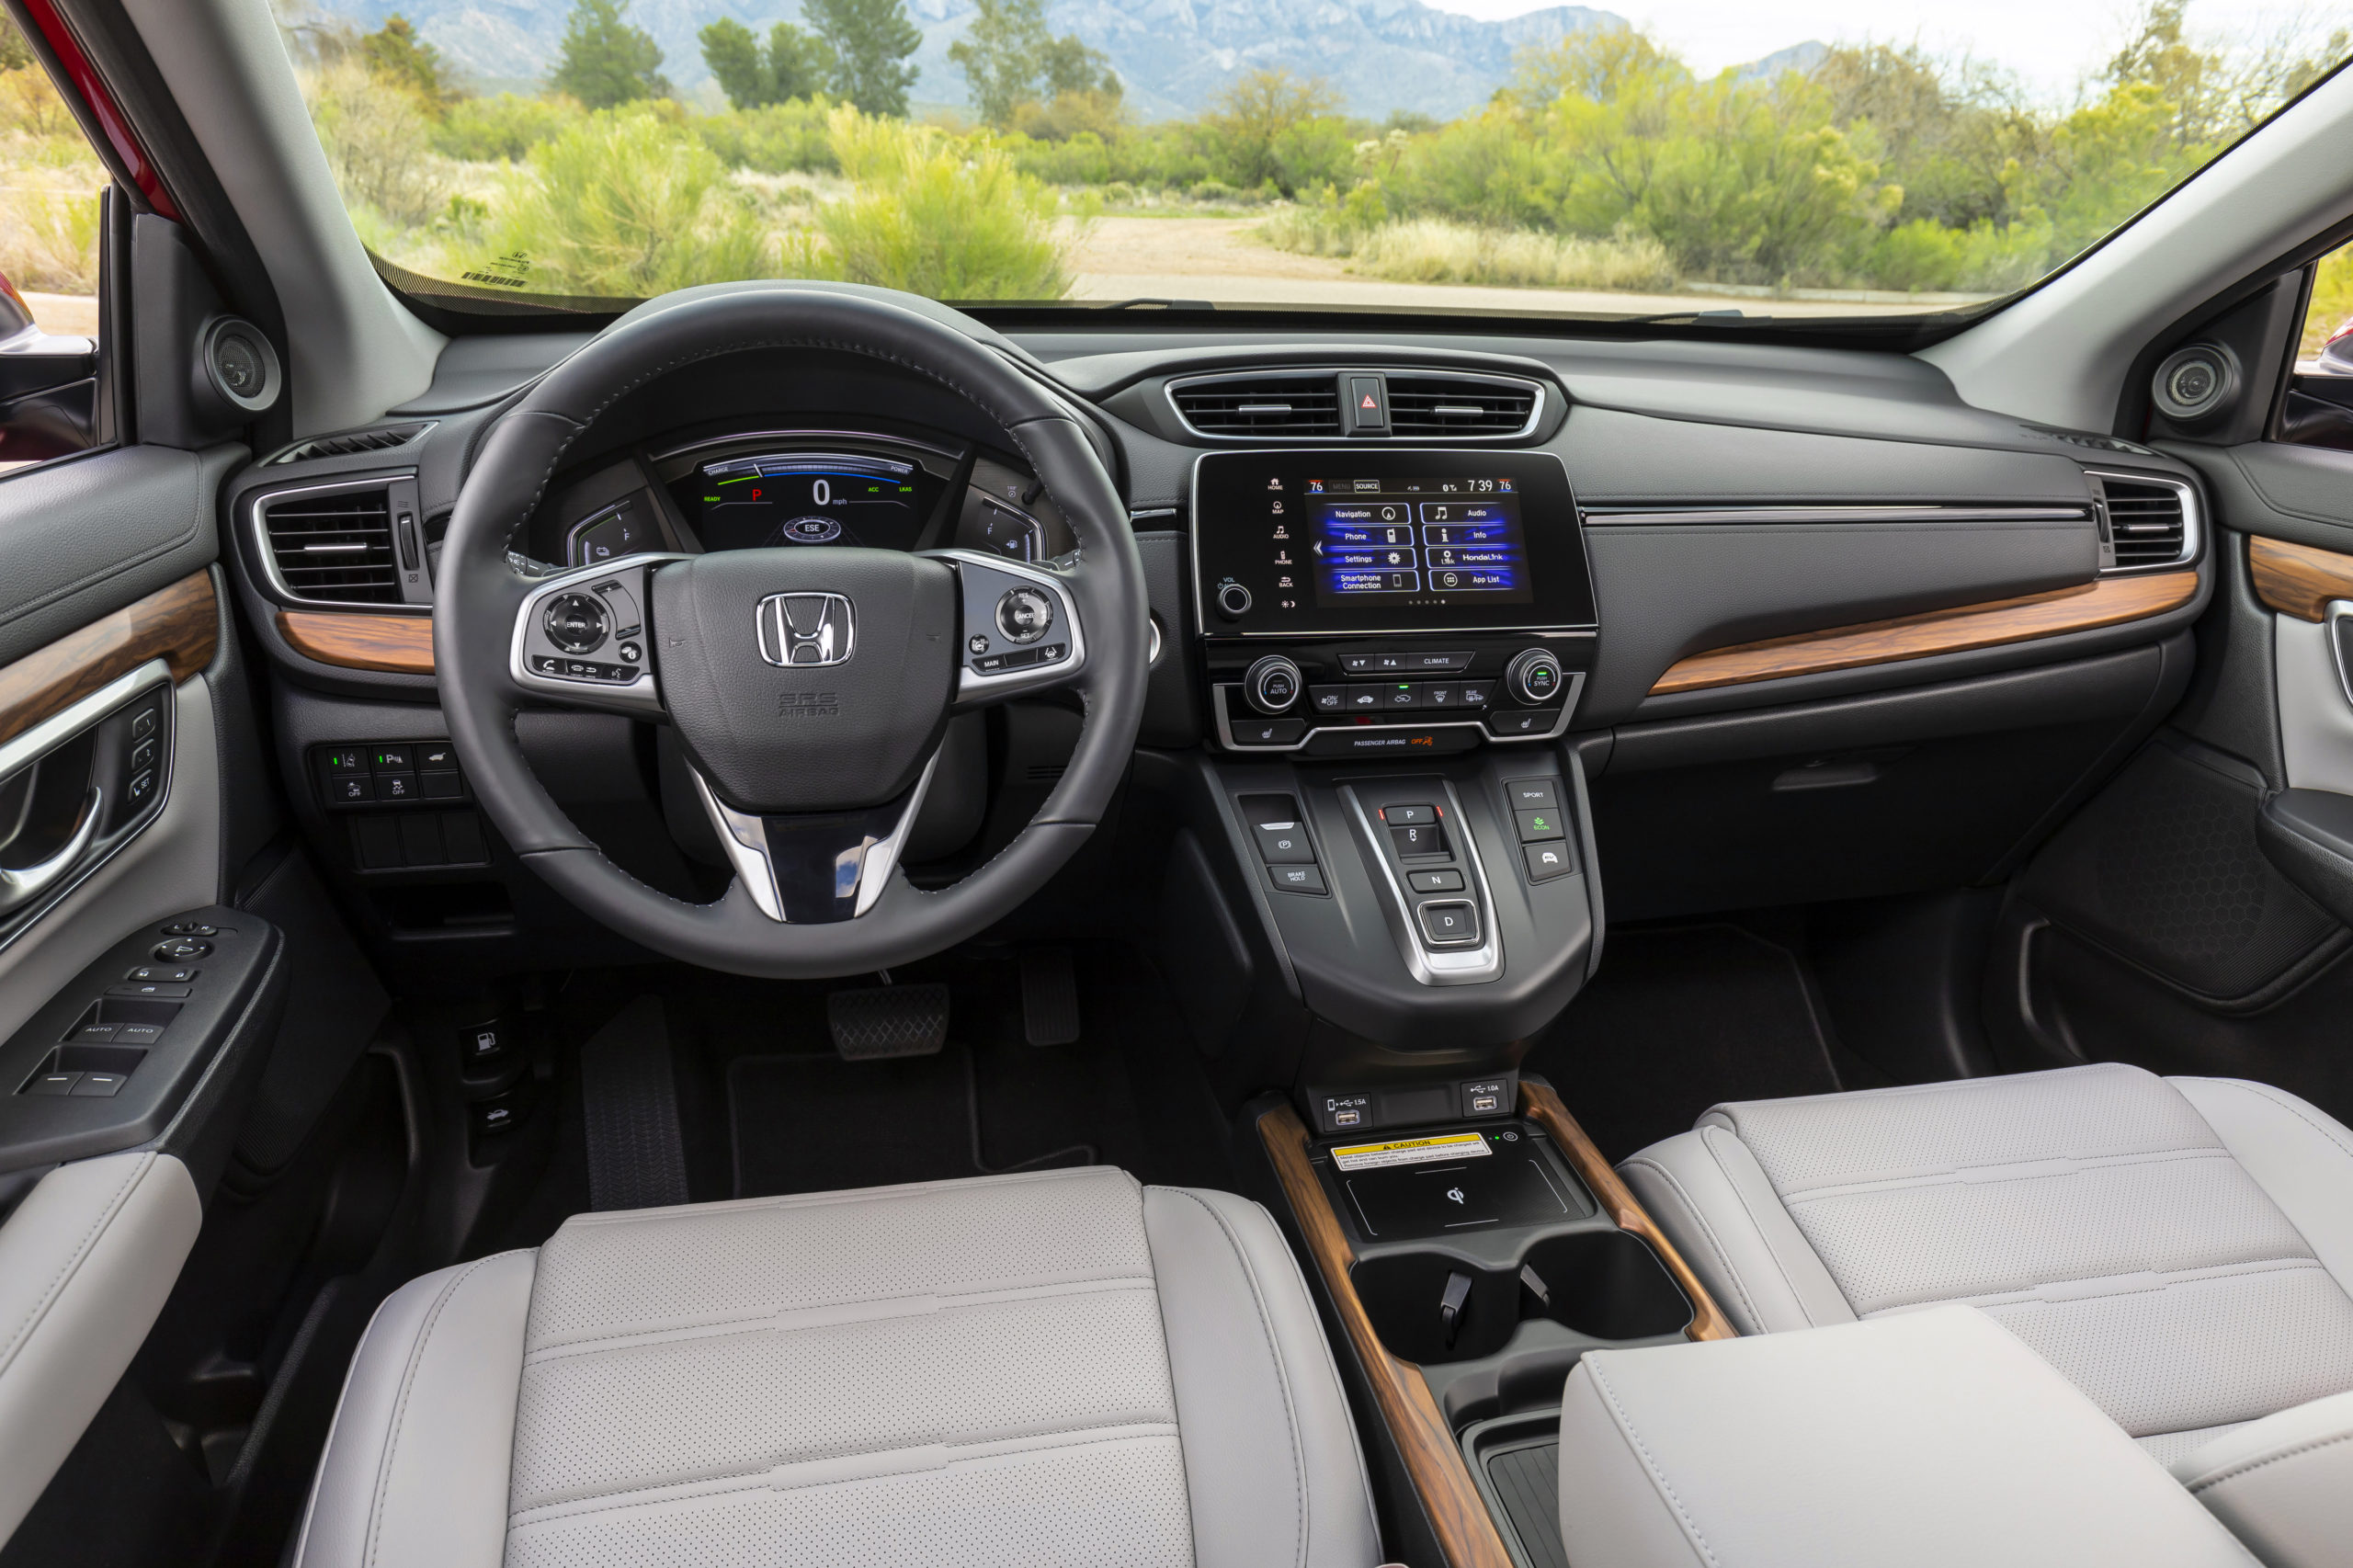 Honda Crv Hybrid 2020 2020 Honda CRV Hybrid First Drive Review